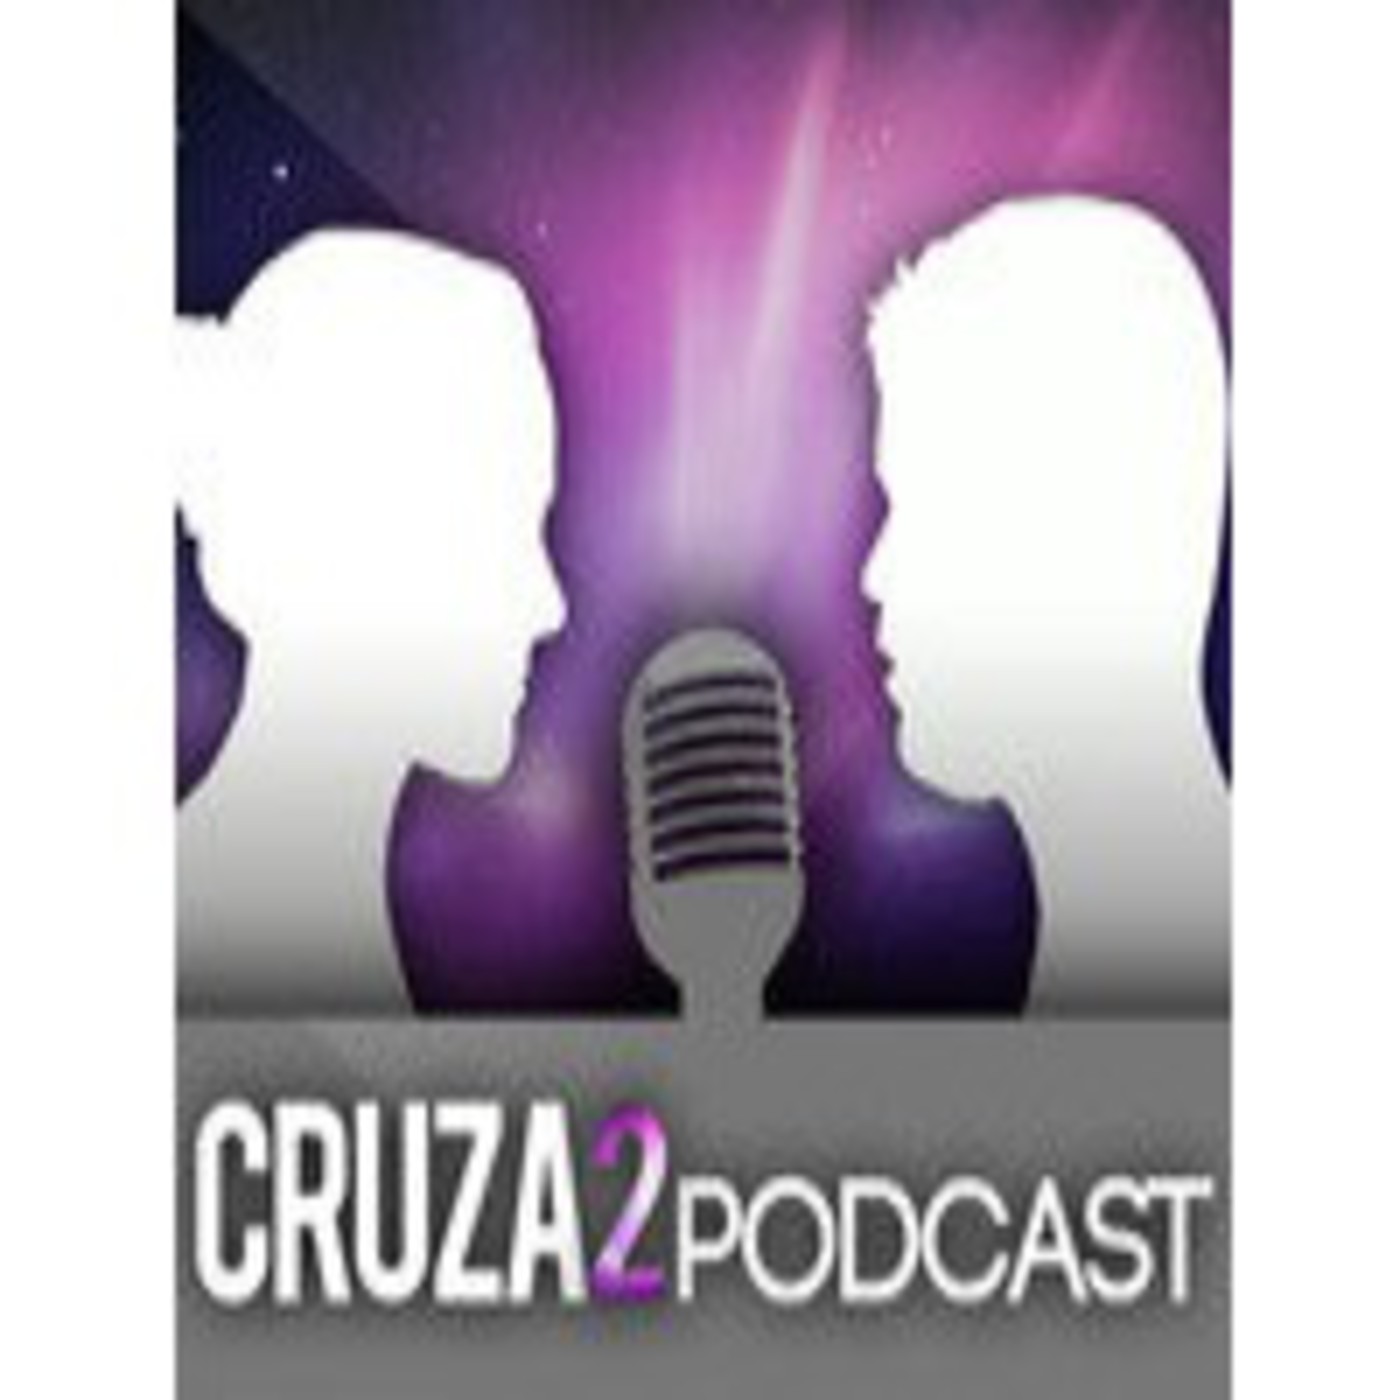 Cruza2 Podcast